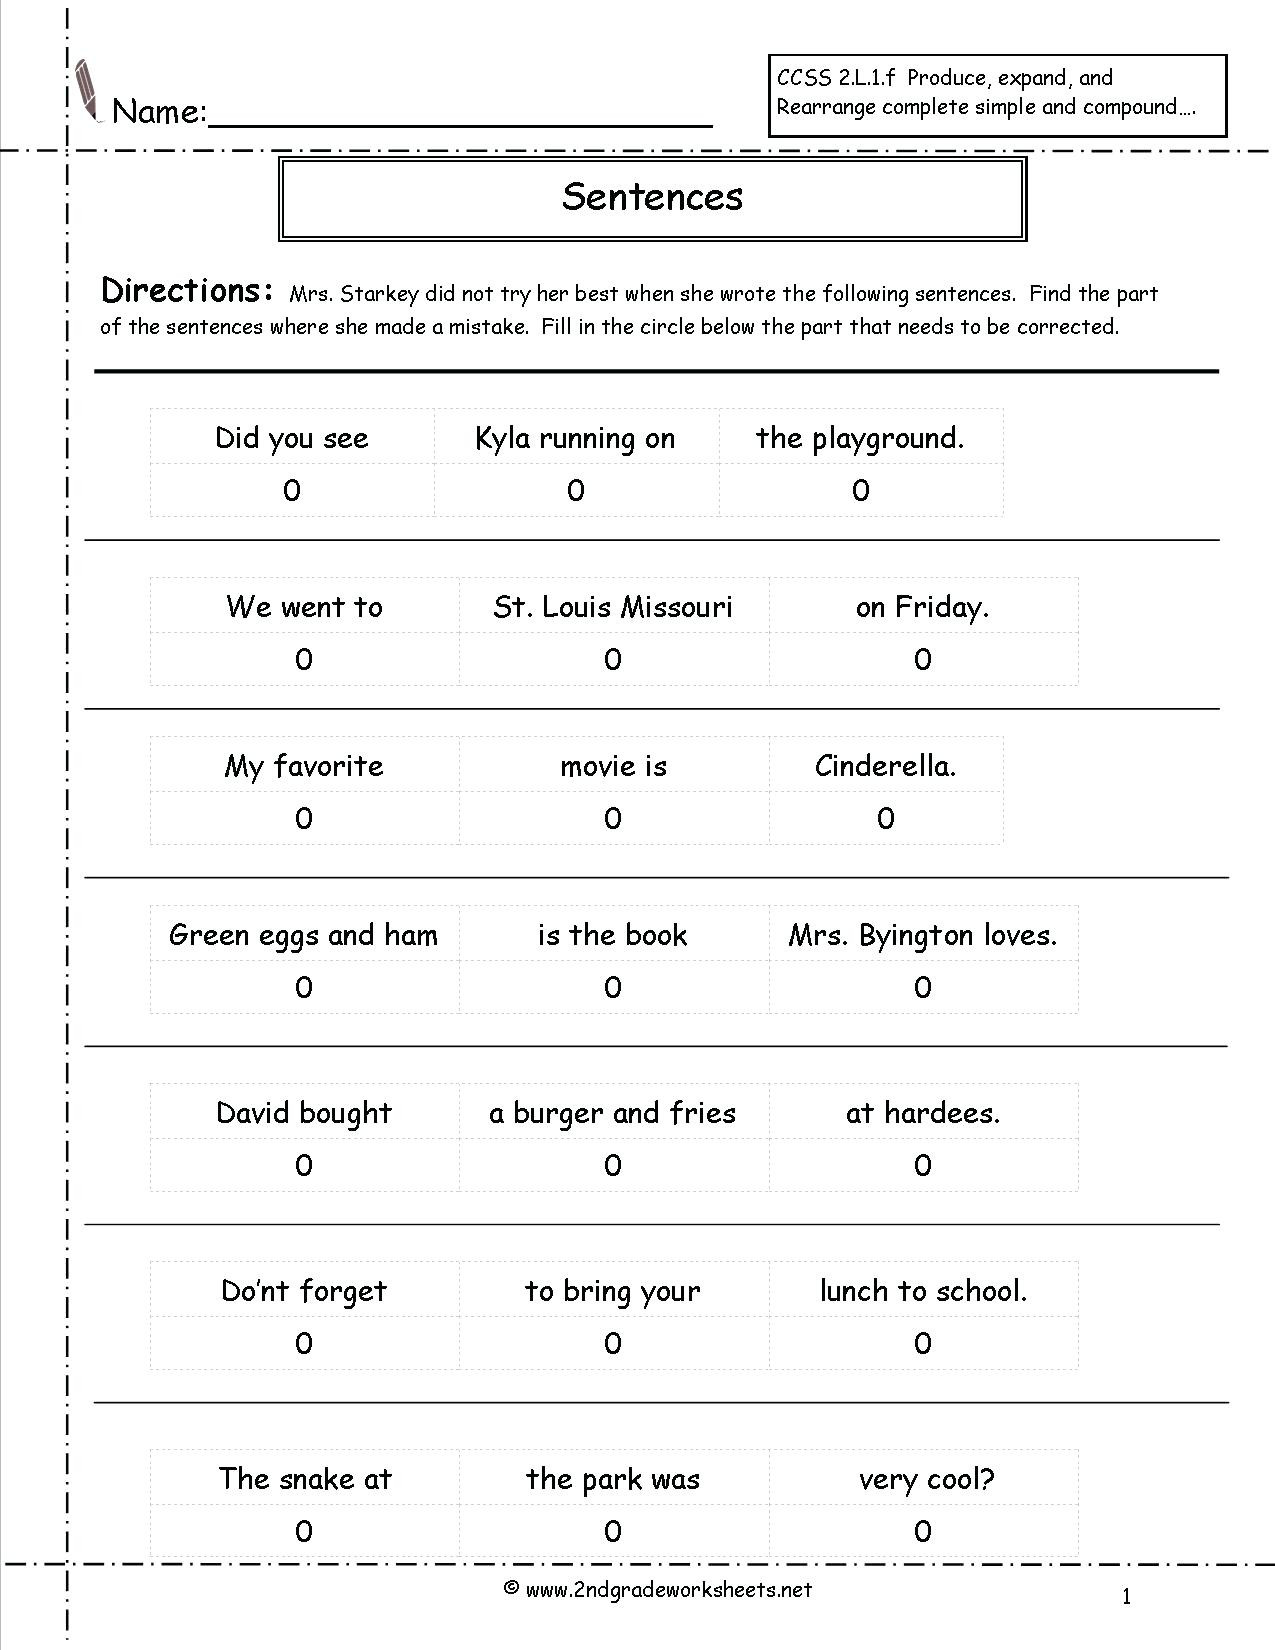 Complete Sentences Worksheets 2nd Grade Types Sentences Worksheets to Download Types Of